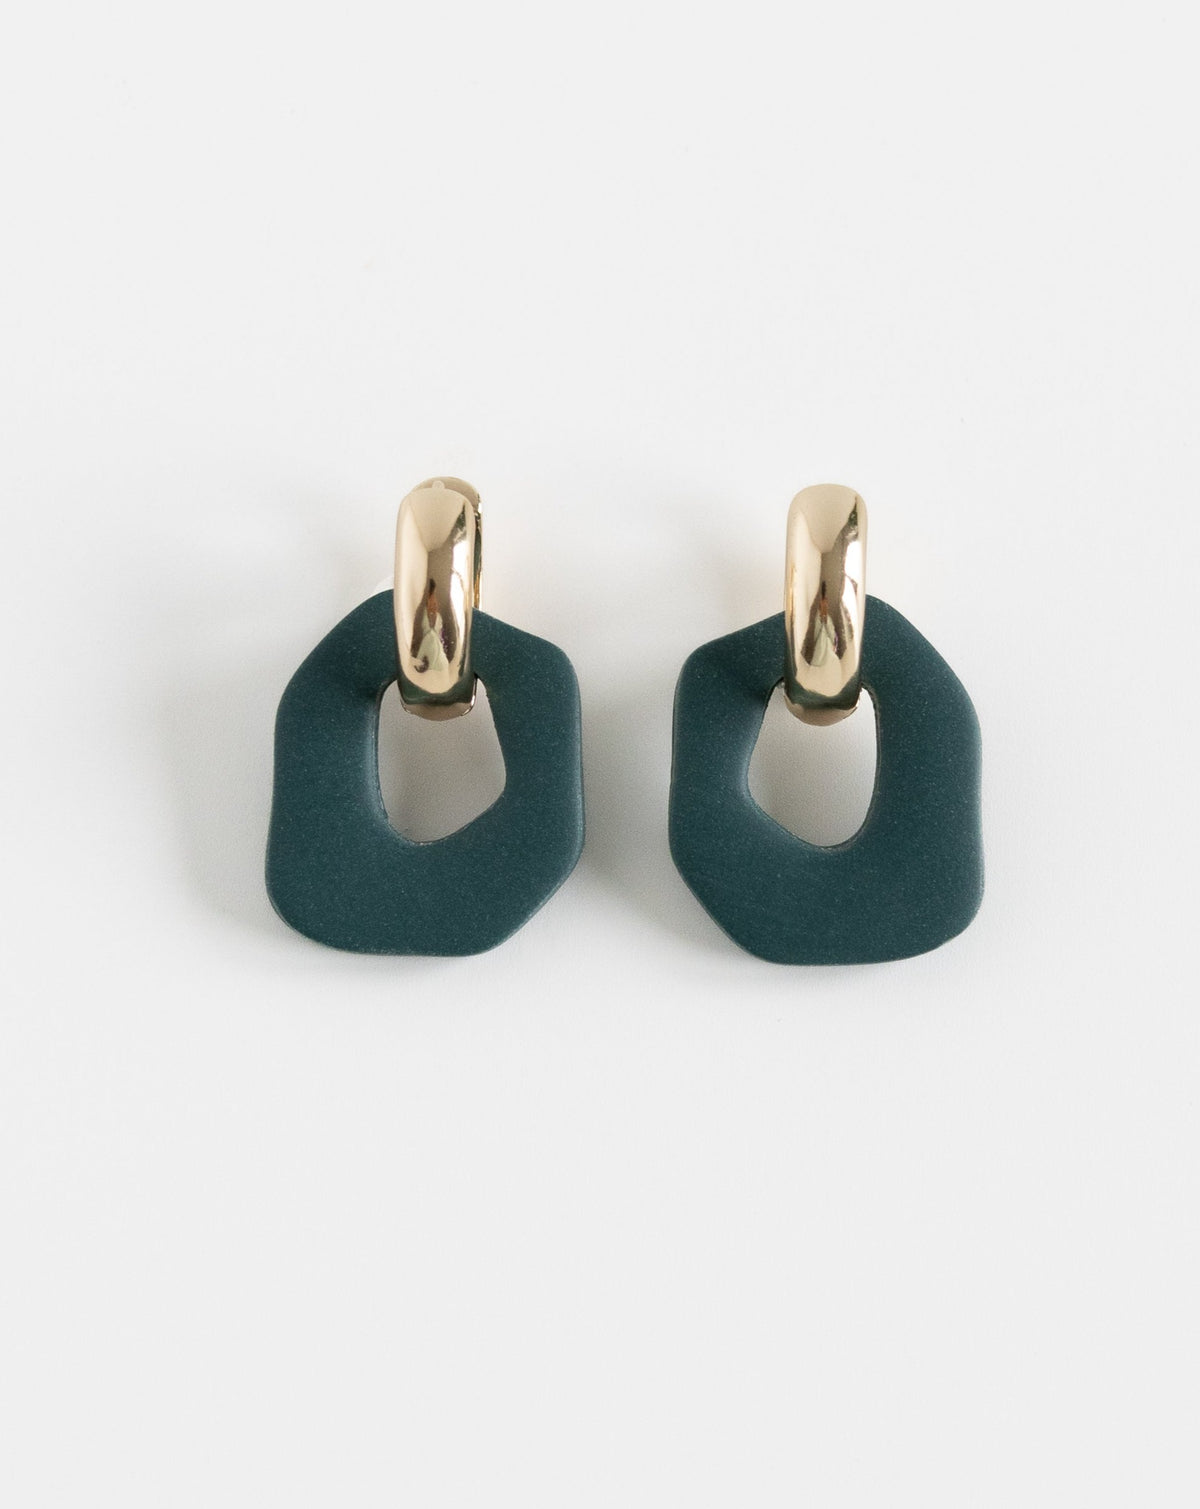 Darien earrings in Pine color with gold hoops